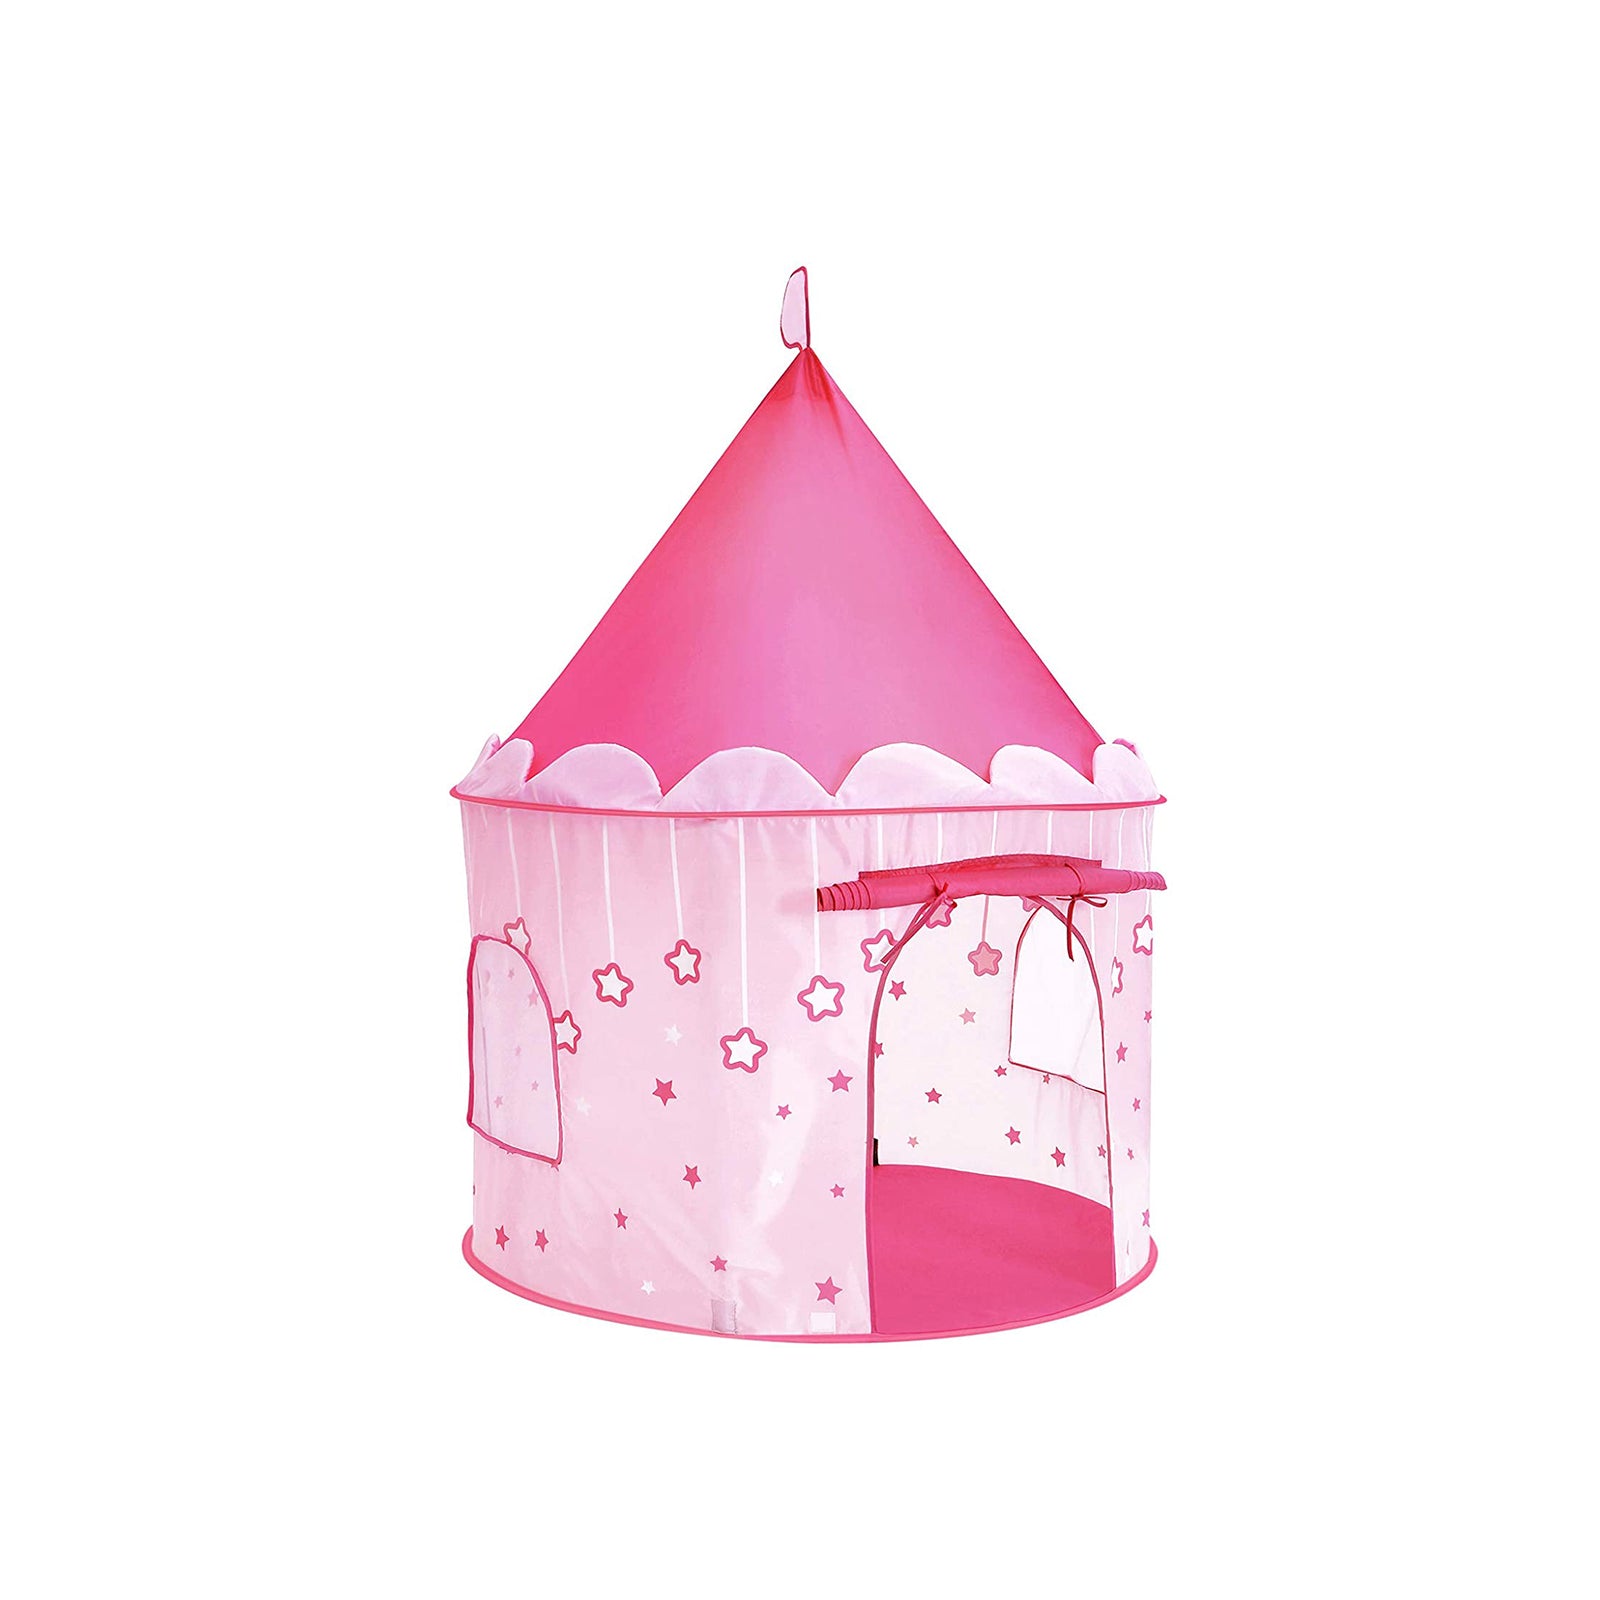 Spielzelt Prinzessinnenschloss 101 x 135 cm(Ø x H) Pink